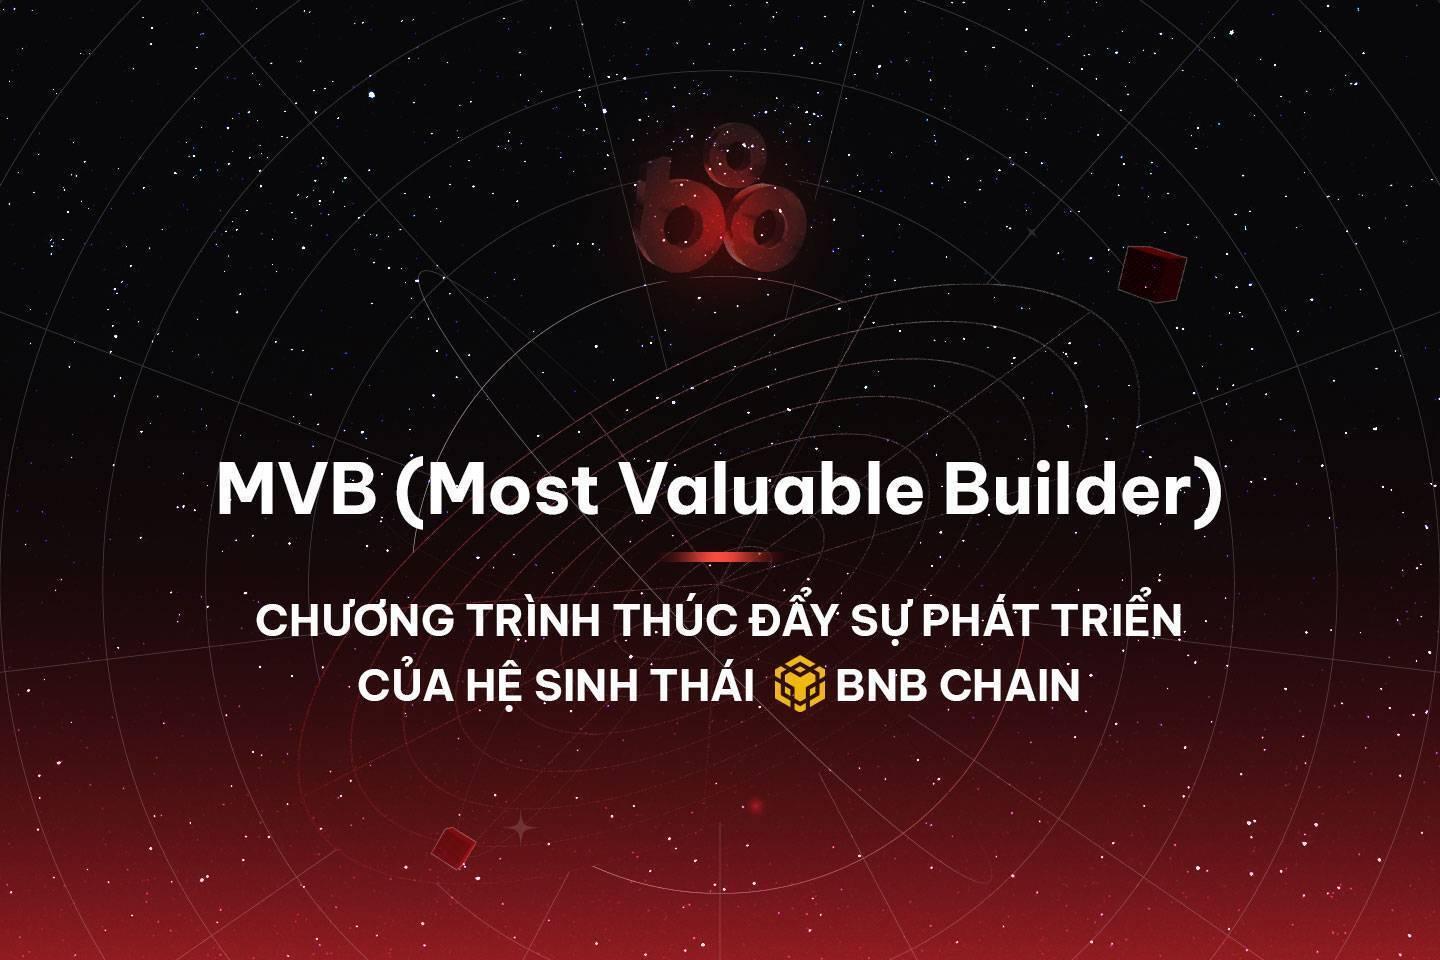 mvb-most-valuable-builder-chuong-trinh-thuc-day-su-phat-trien-cua-he-sinh-thai-bnb-chain